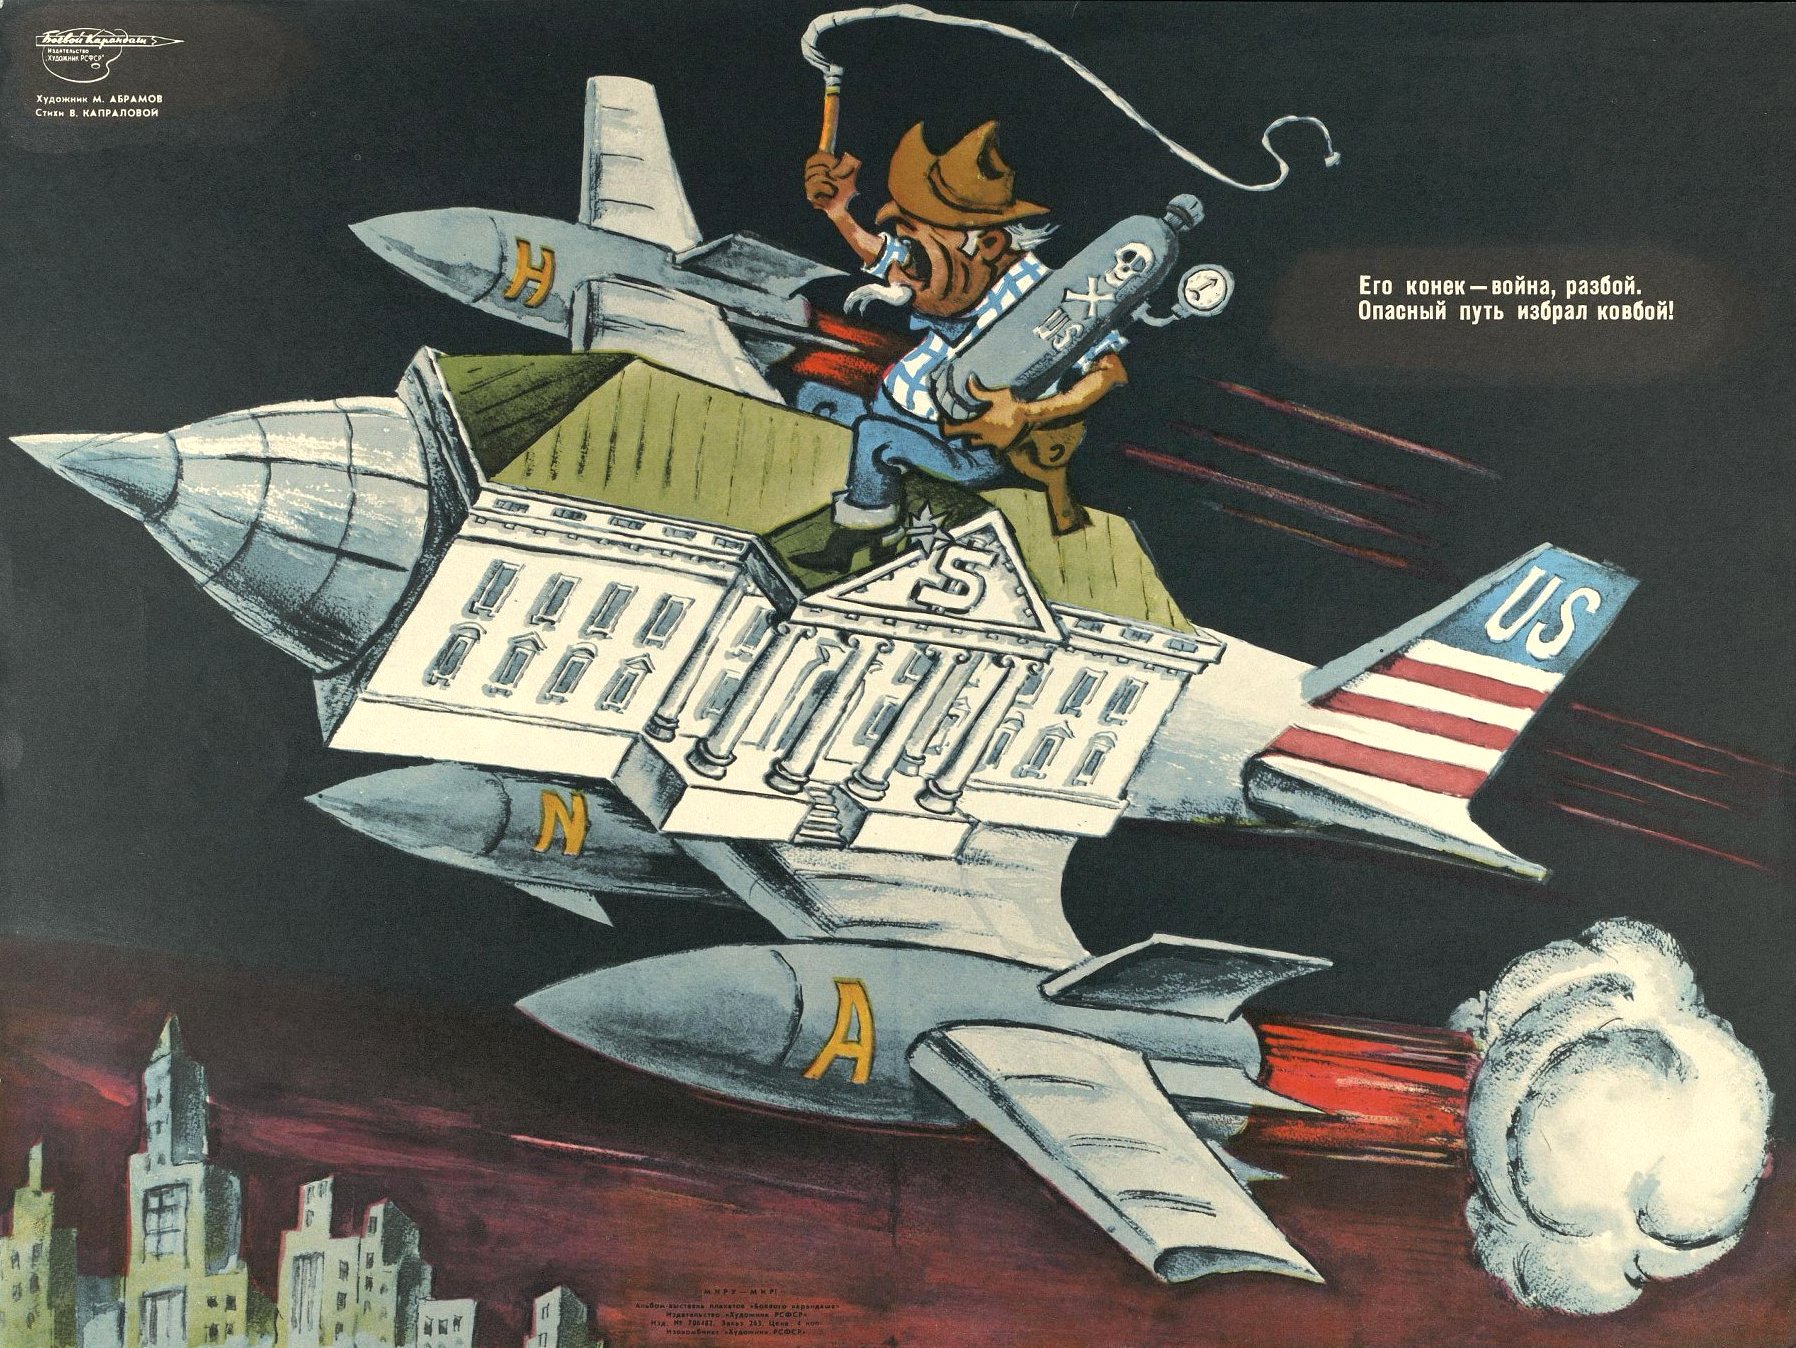 Угроза миру 1. Плакаты против США времен холодной войны СССР. Советские плакаты времен холодной войны. Агитационные плакаты времен холодной войны.